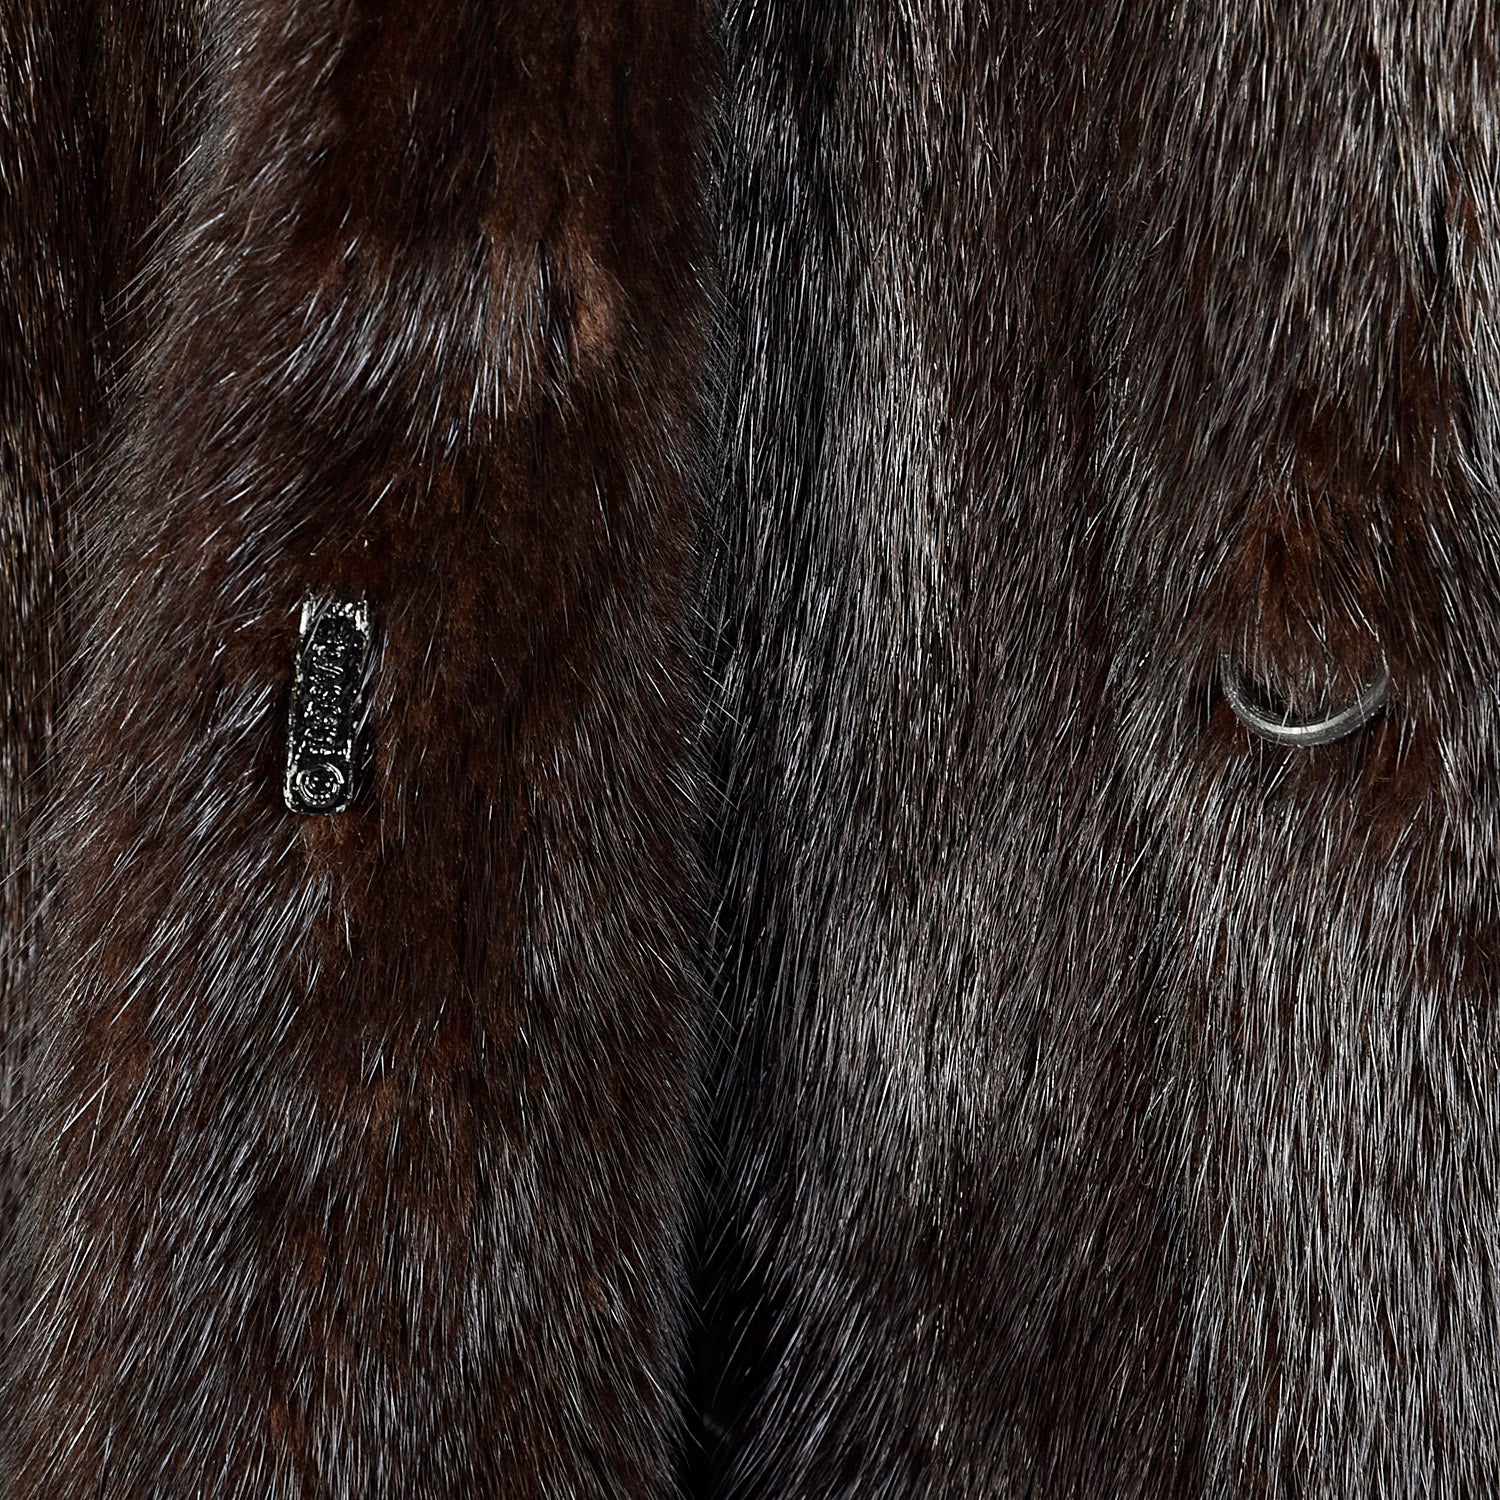 XL Brown Full Length Mink Fur Coat